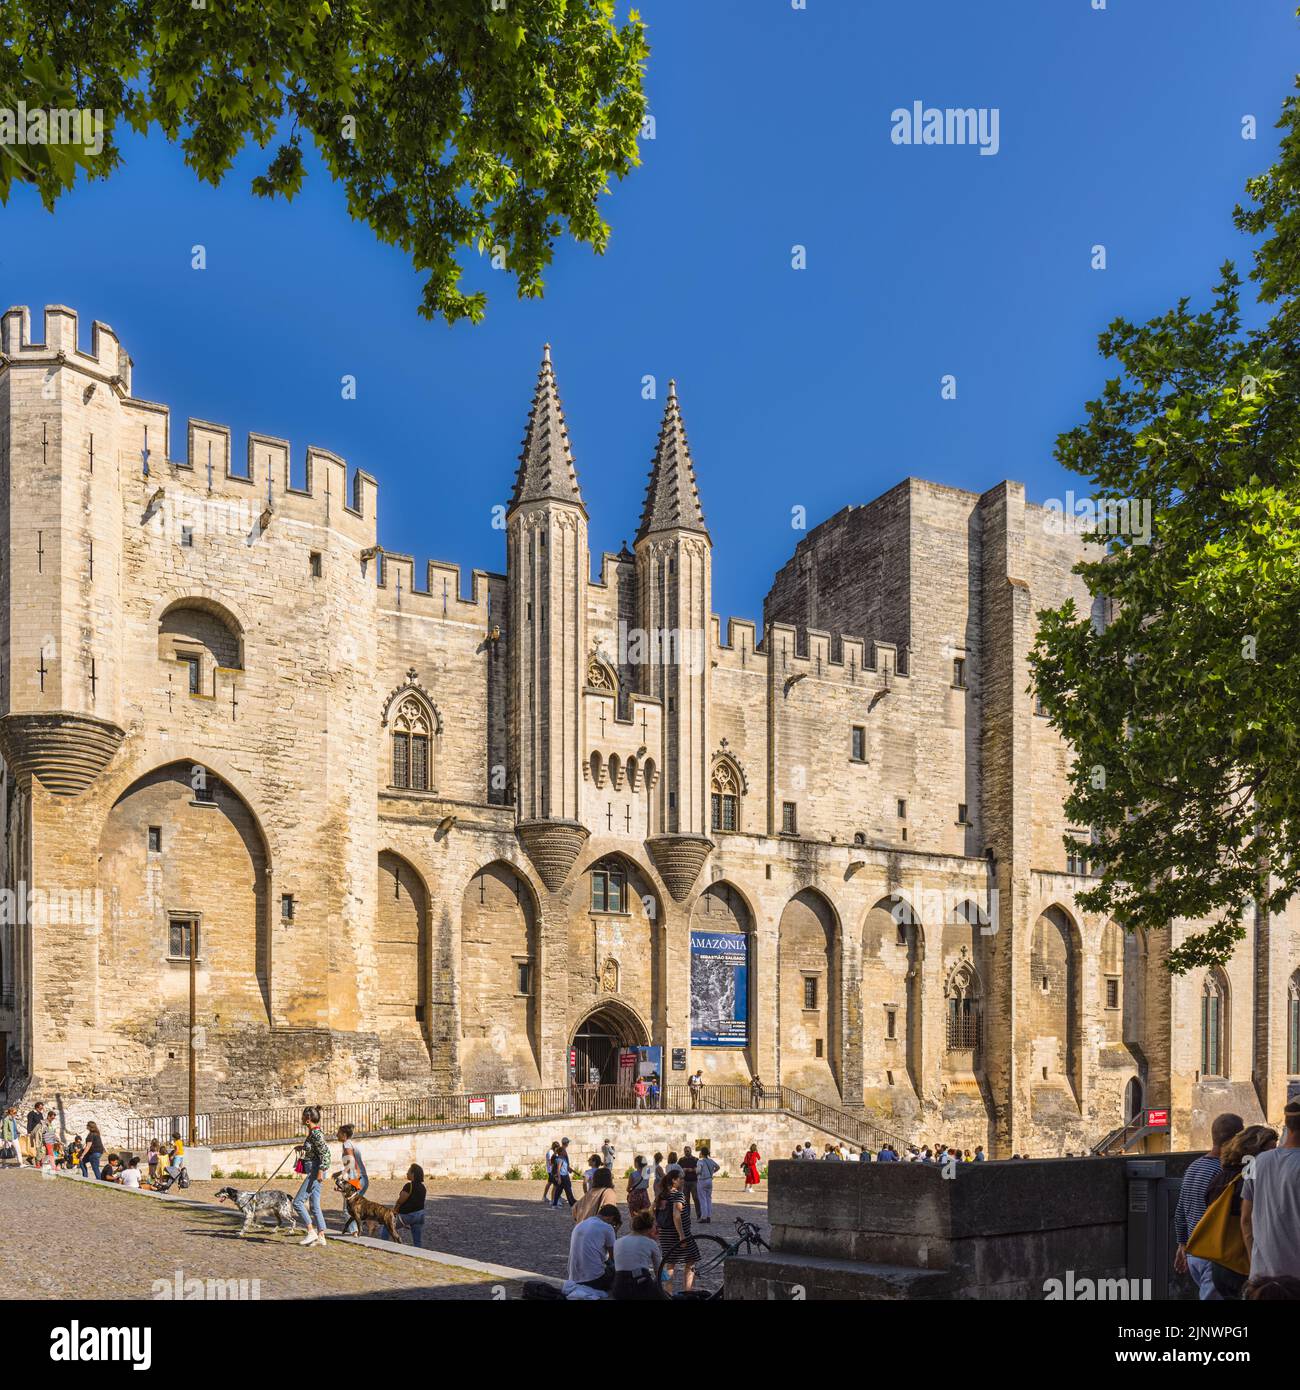 Papstpalast - Papstpalast, Avignon, Vaucluse, Frankreich. Das historische Zentrum von Avignon ist ein UNESCO-Weltkulturerbe. Stockfoto